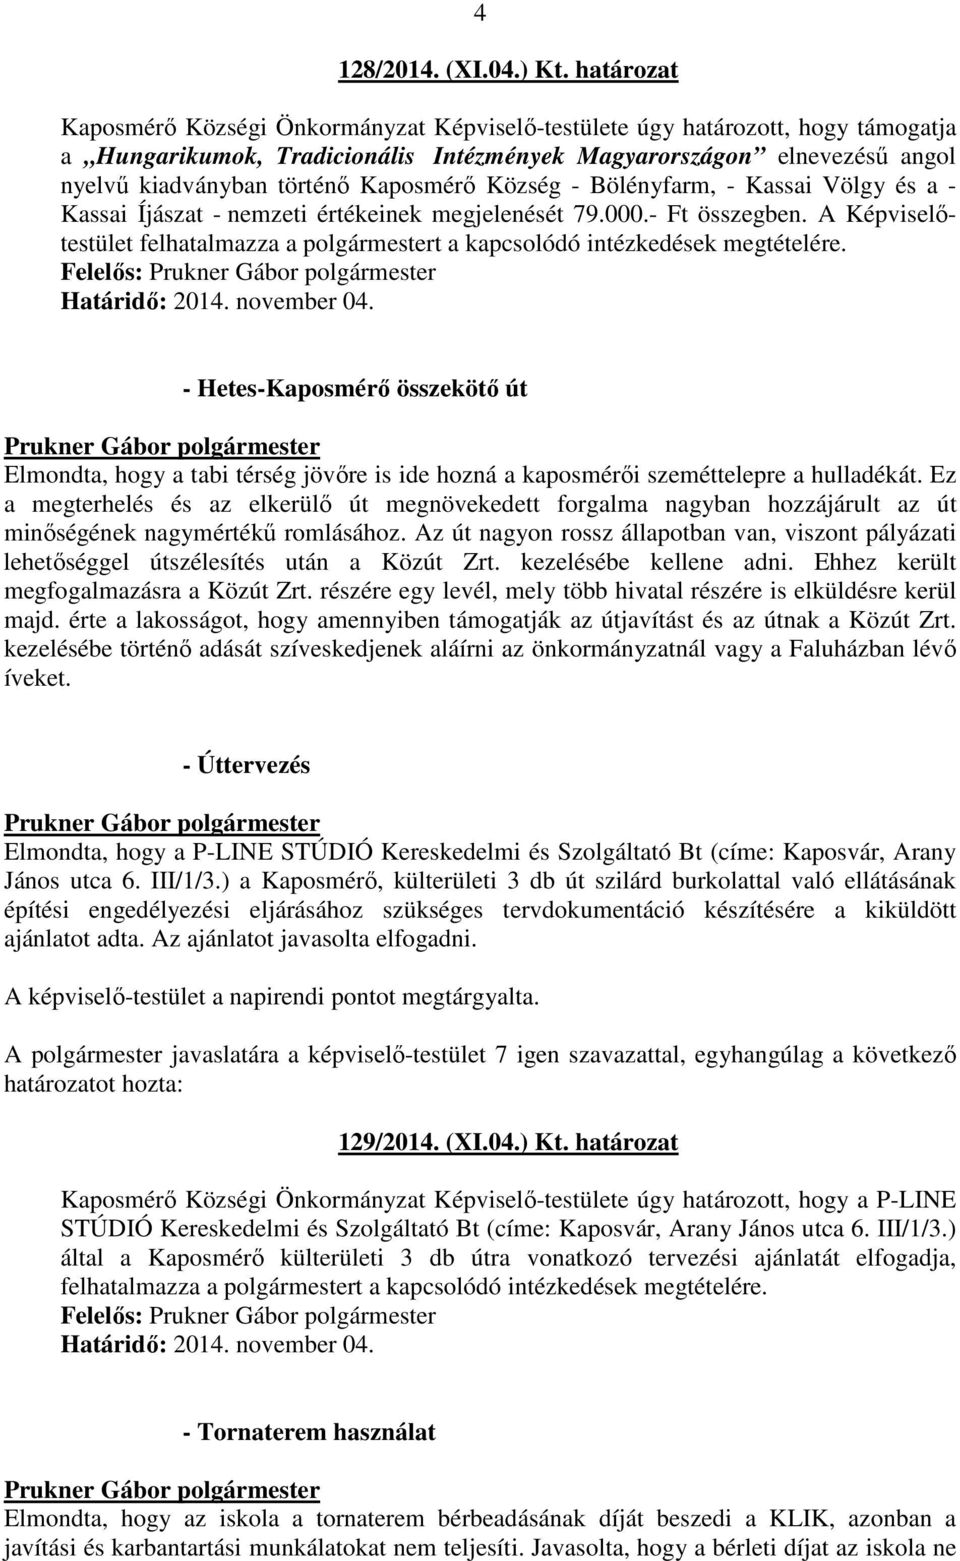 Kaposmérı Község - Bölényfarm, - Kassai Völgy és a - Kassai Íjászat - nemzeti értékeinek megjelenését 79.000.- Ft összegben.